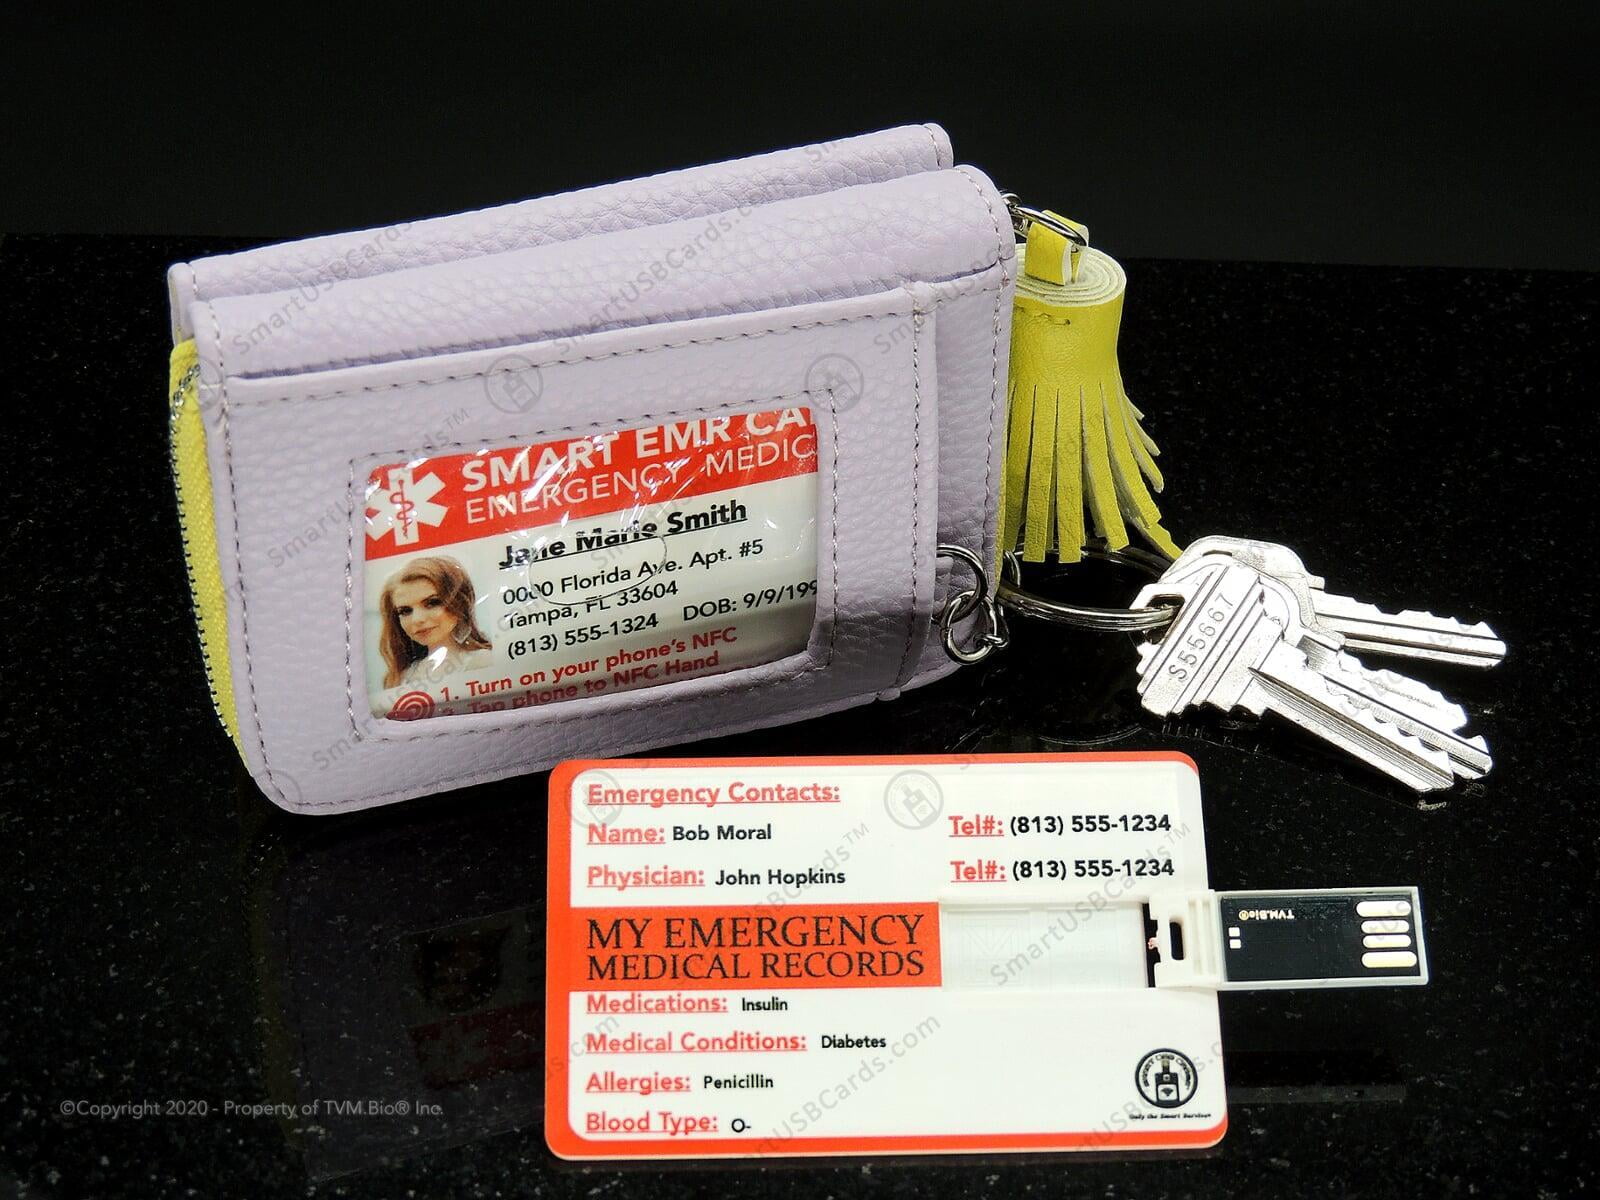 911 Medical ID Card by Smart USB EMR Card